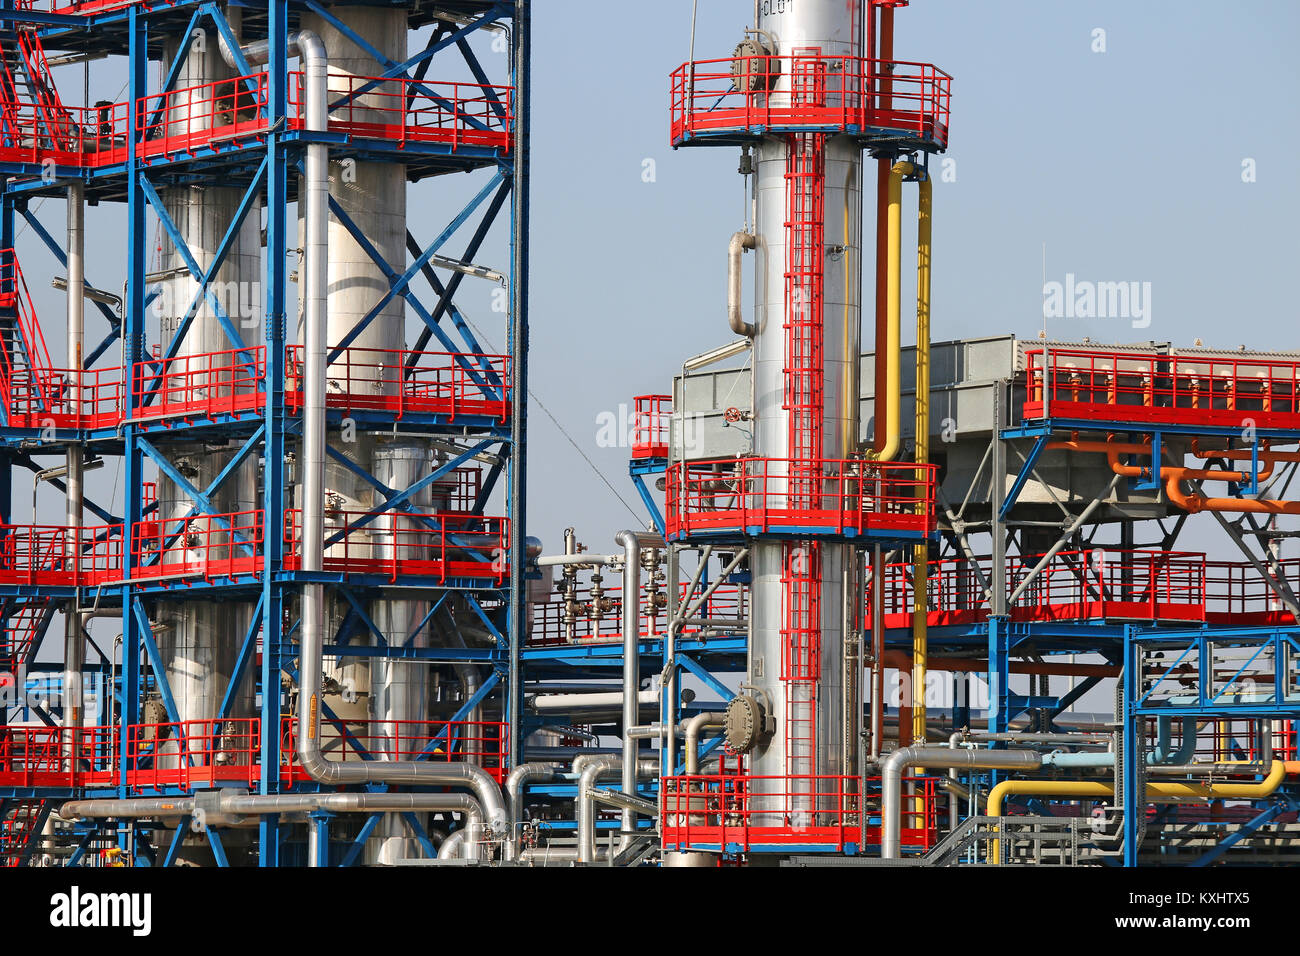 L'usine pétrochimique de raffinerie de pétrole détail Banque D'Images